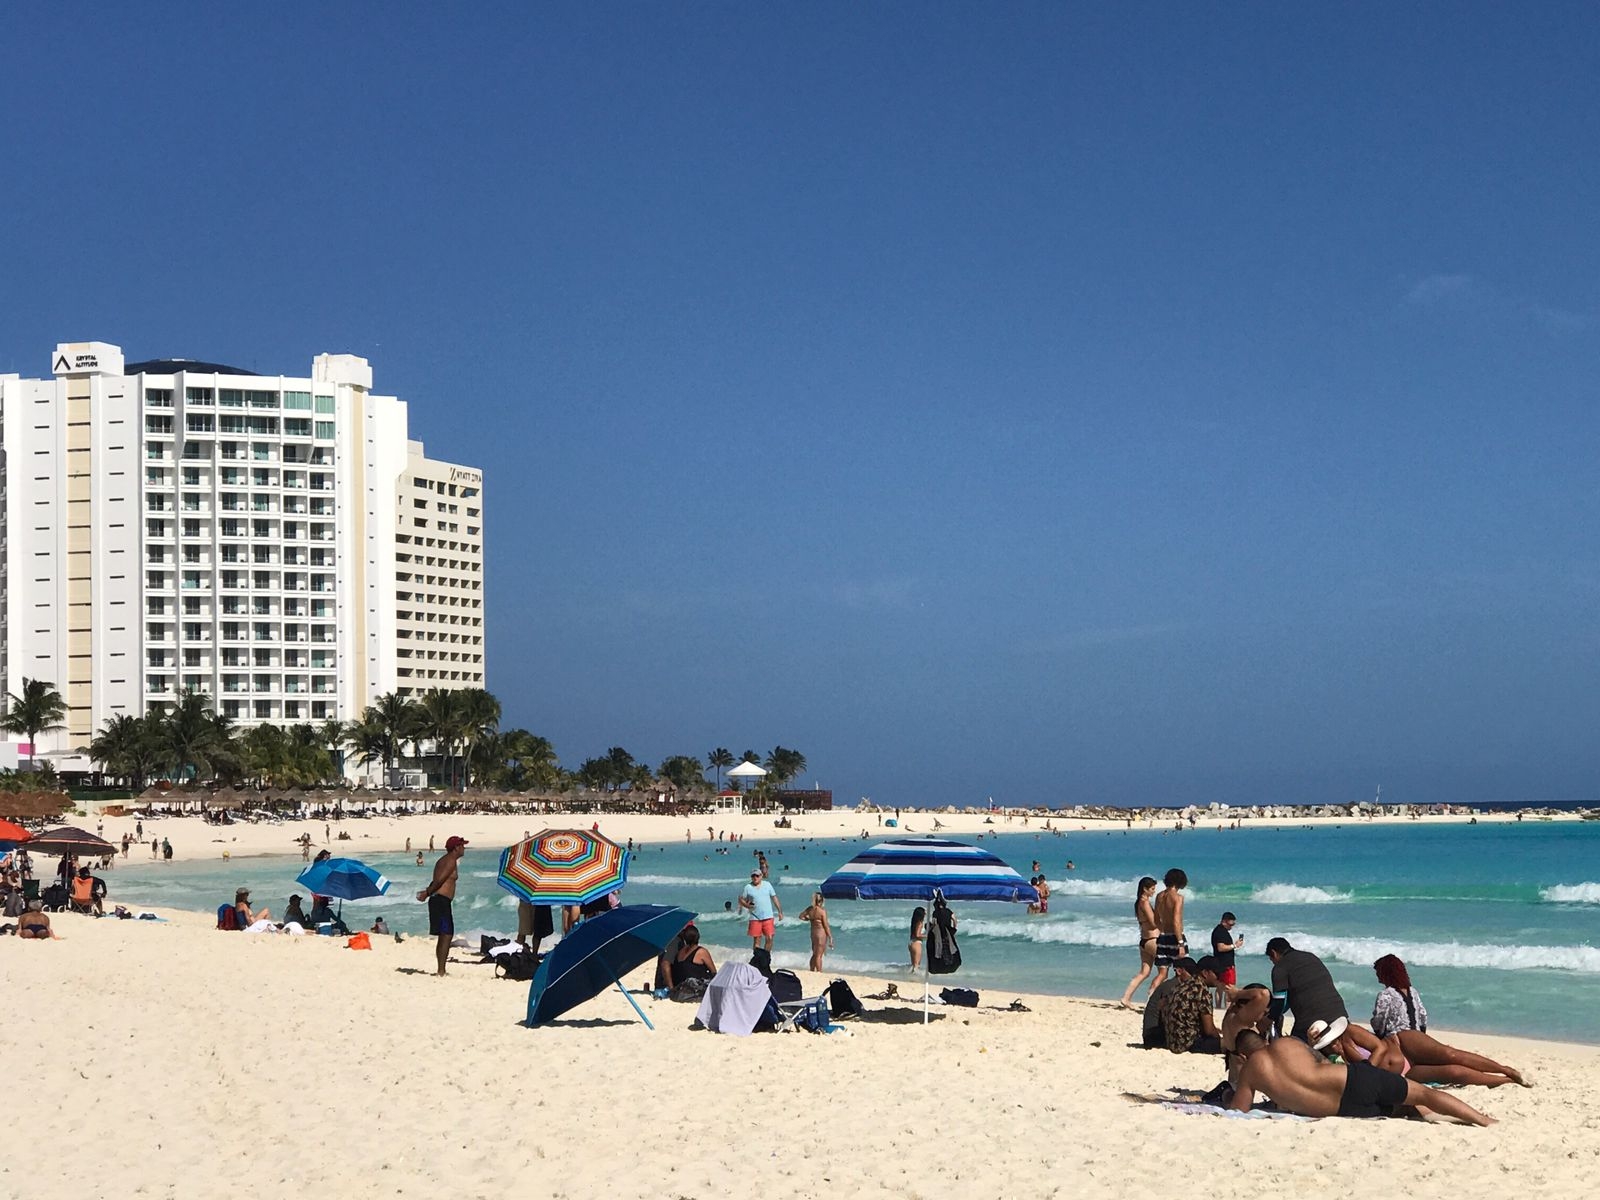 Más de 500 visitantes disfrutan del mar y arenal de Playa Gaviotas en Cancún: EN VIVO